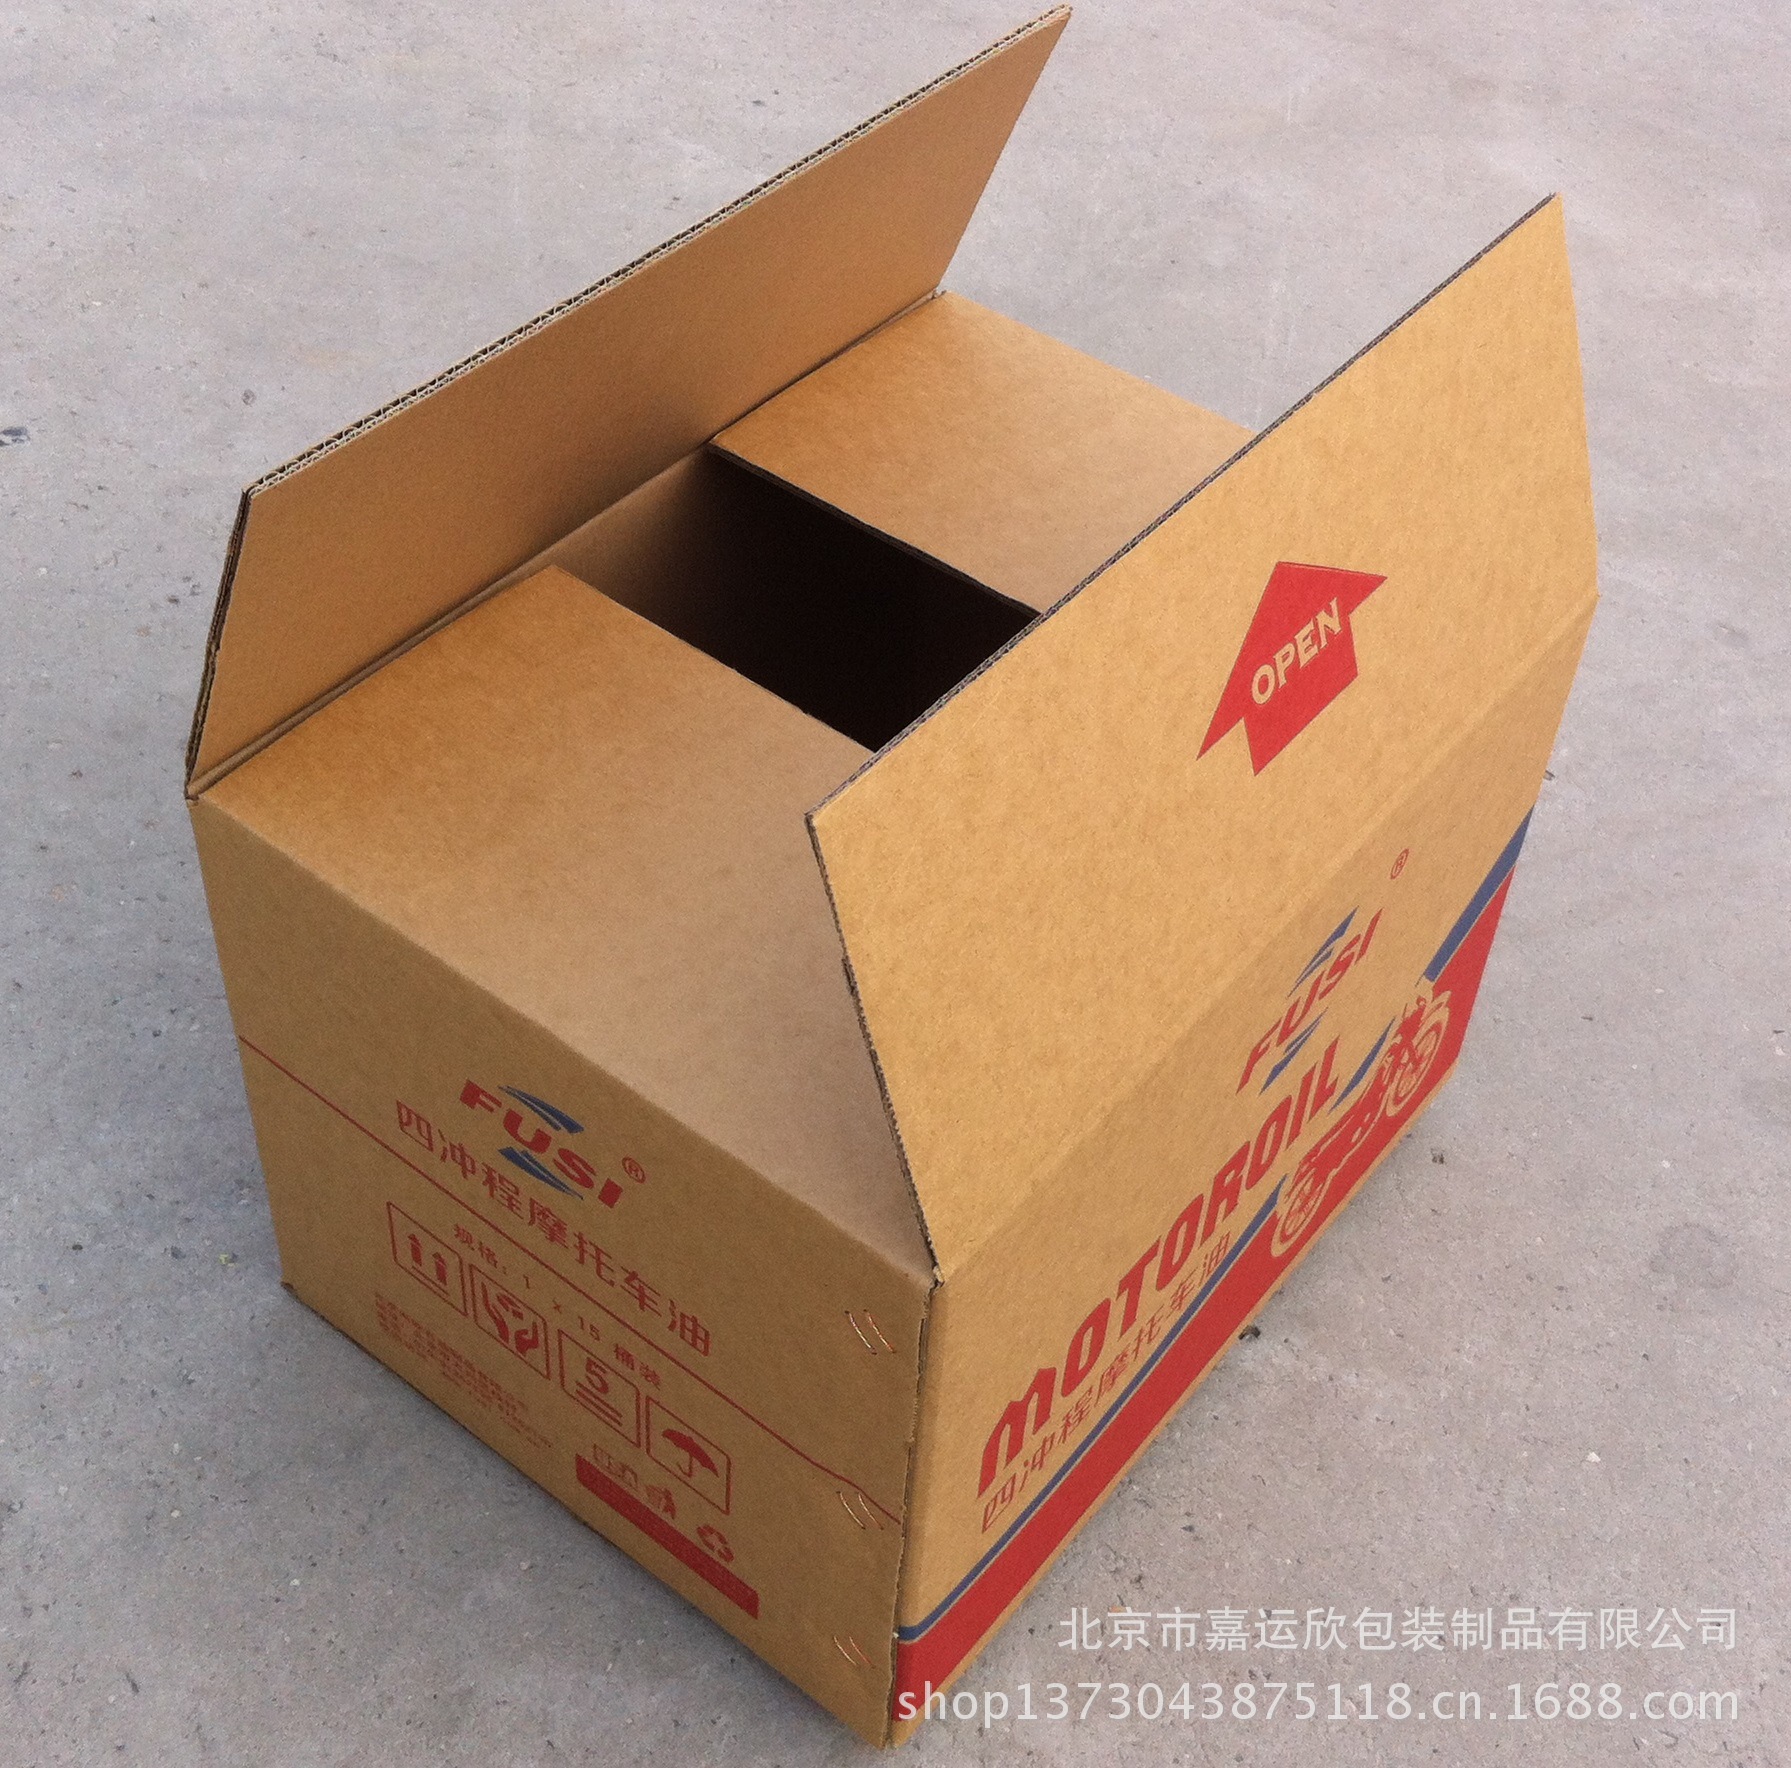 【可定做】瓦楞纸箱 彩色纸箱 彩印纸盒 包装箱纸箱 包装制品